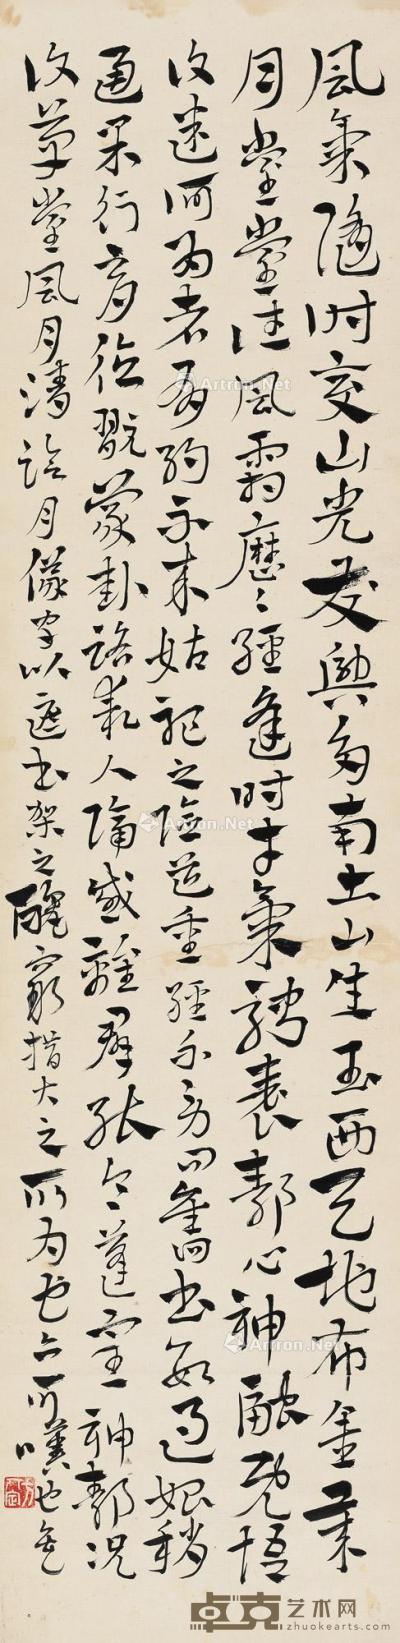  章草“临月仪帖字” 立轴 水墨纸本 132.5×32cm